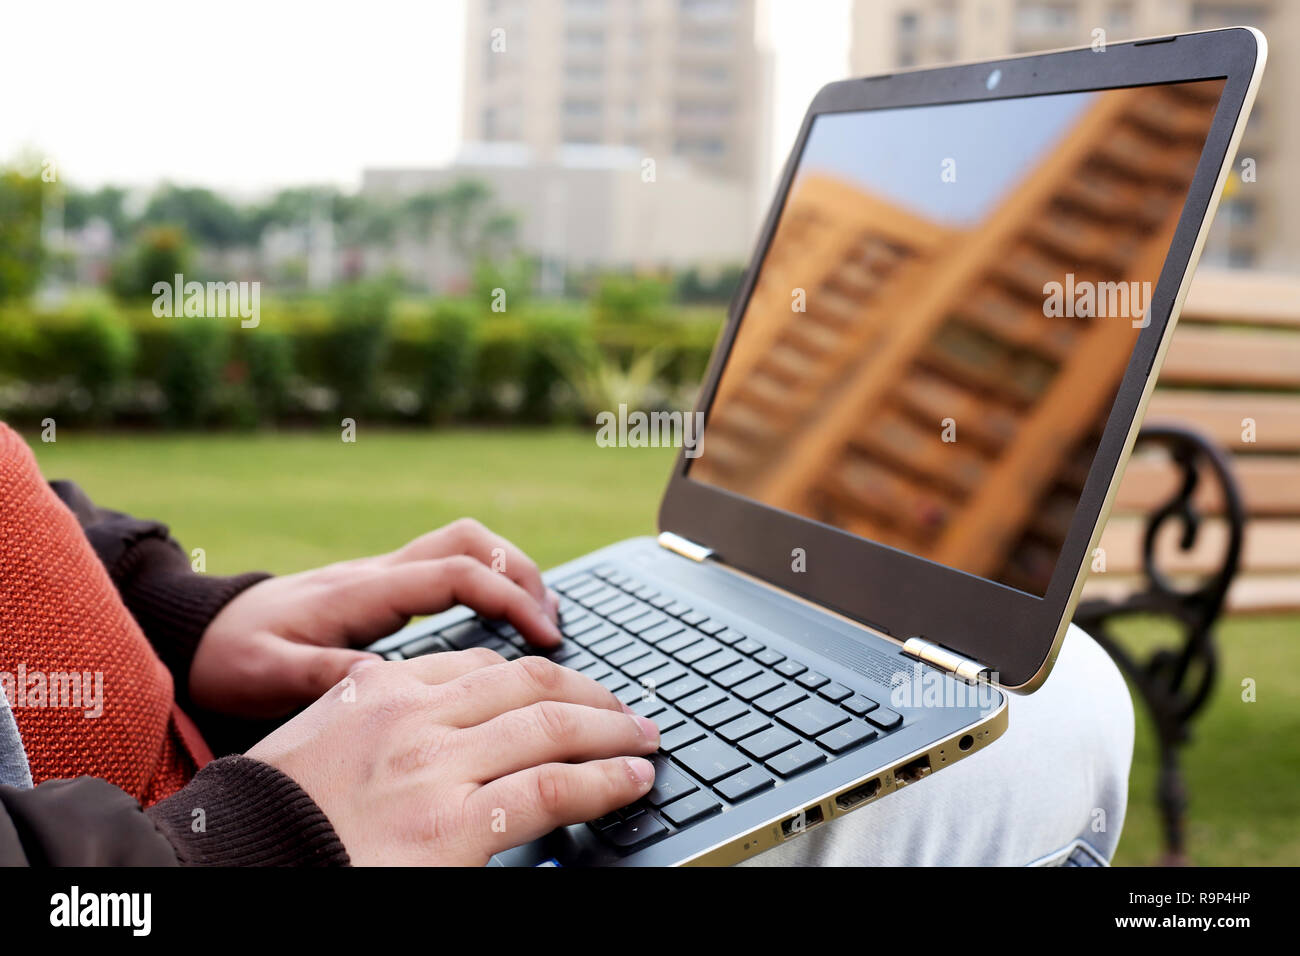 L'homme est saisie de travailler sur l'ordinateur portable en parc. Banque D'Images